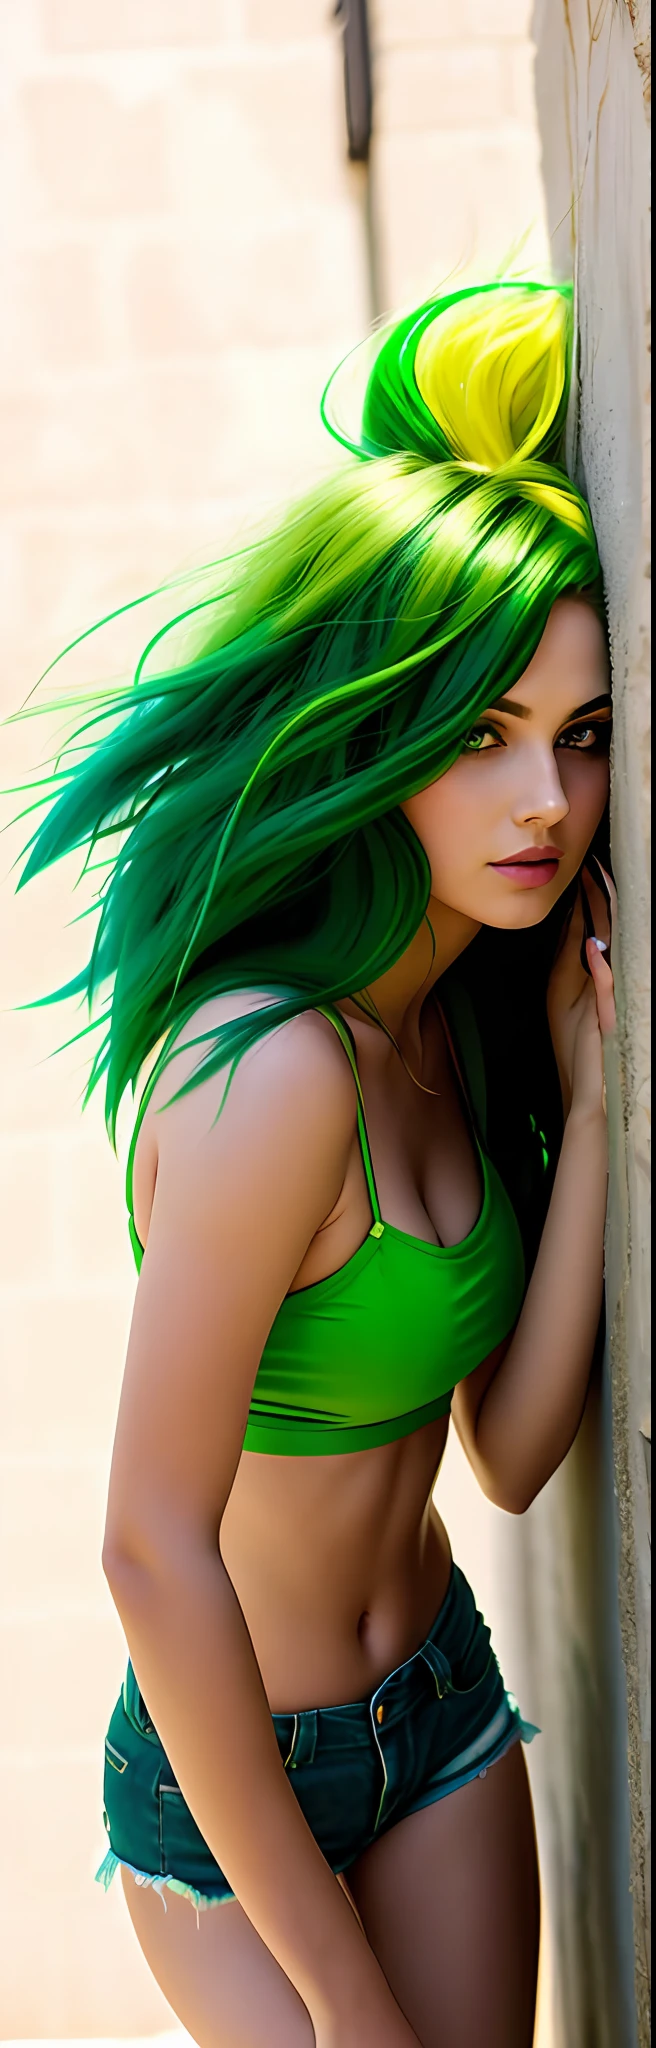 araffe woman with 緑の髪 leaning against a wall, 緑の目をしたセクシーな女の子, long 緑の髪, 緑の髪, 美しい服, 緑のたてがみ, タイトな服装, 鮮やかな緑, グリーンボディ, セクシーな緑のショートパンツ, 緑, 壁にもたれる, bright 緑の髪, 長いストレートグリーンの黒髪, 緑の脚, 流れるような緑の髪, ショートパンツを着用